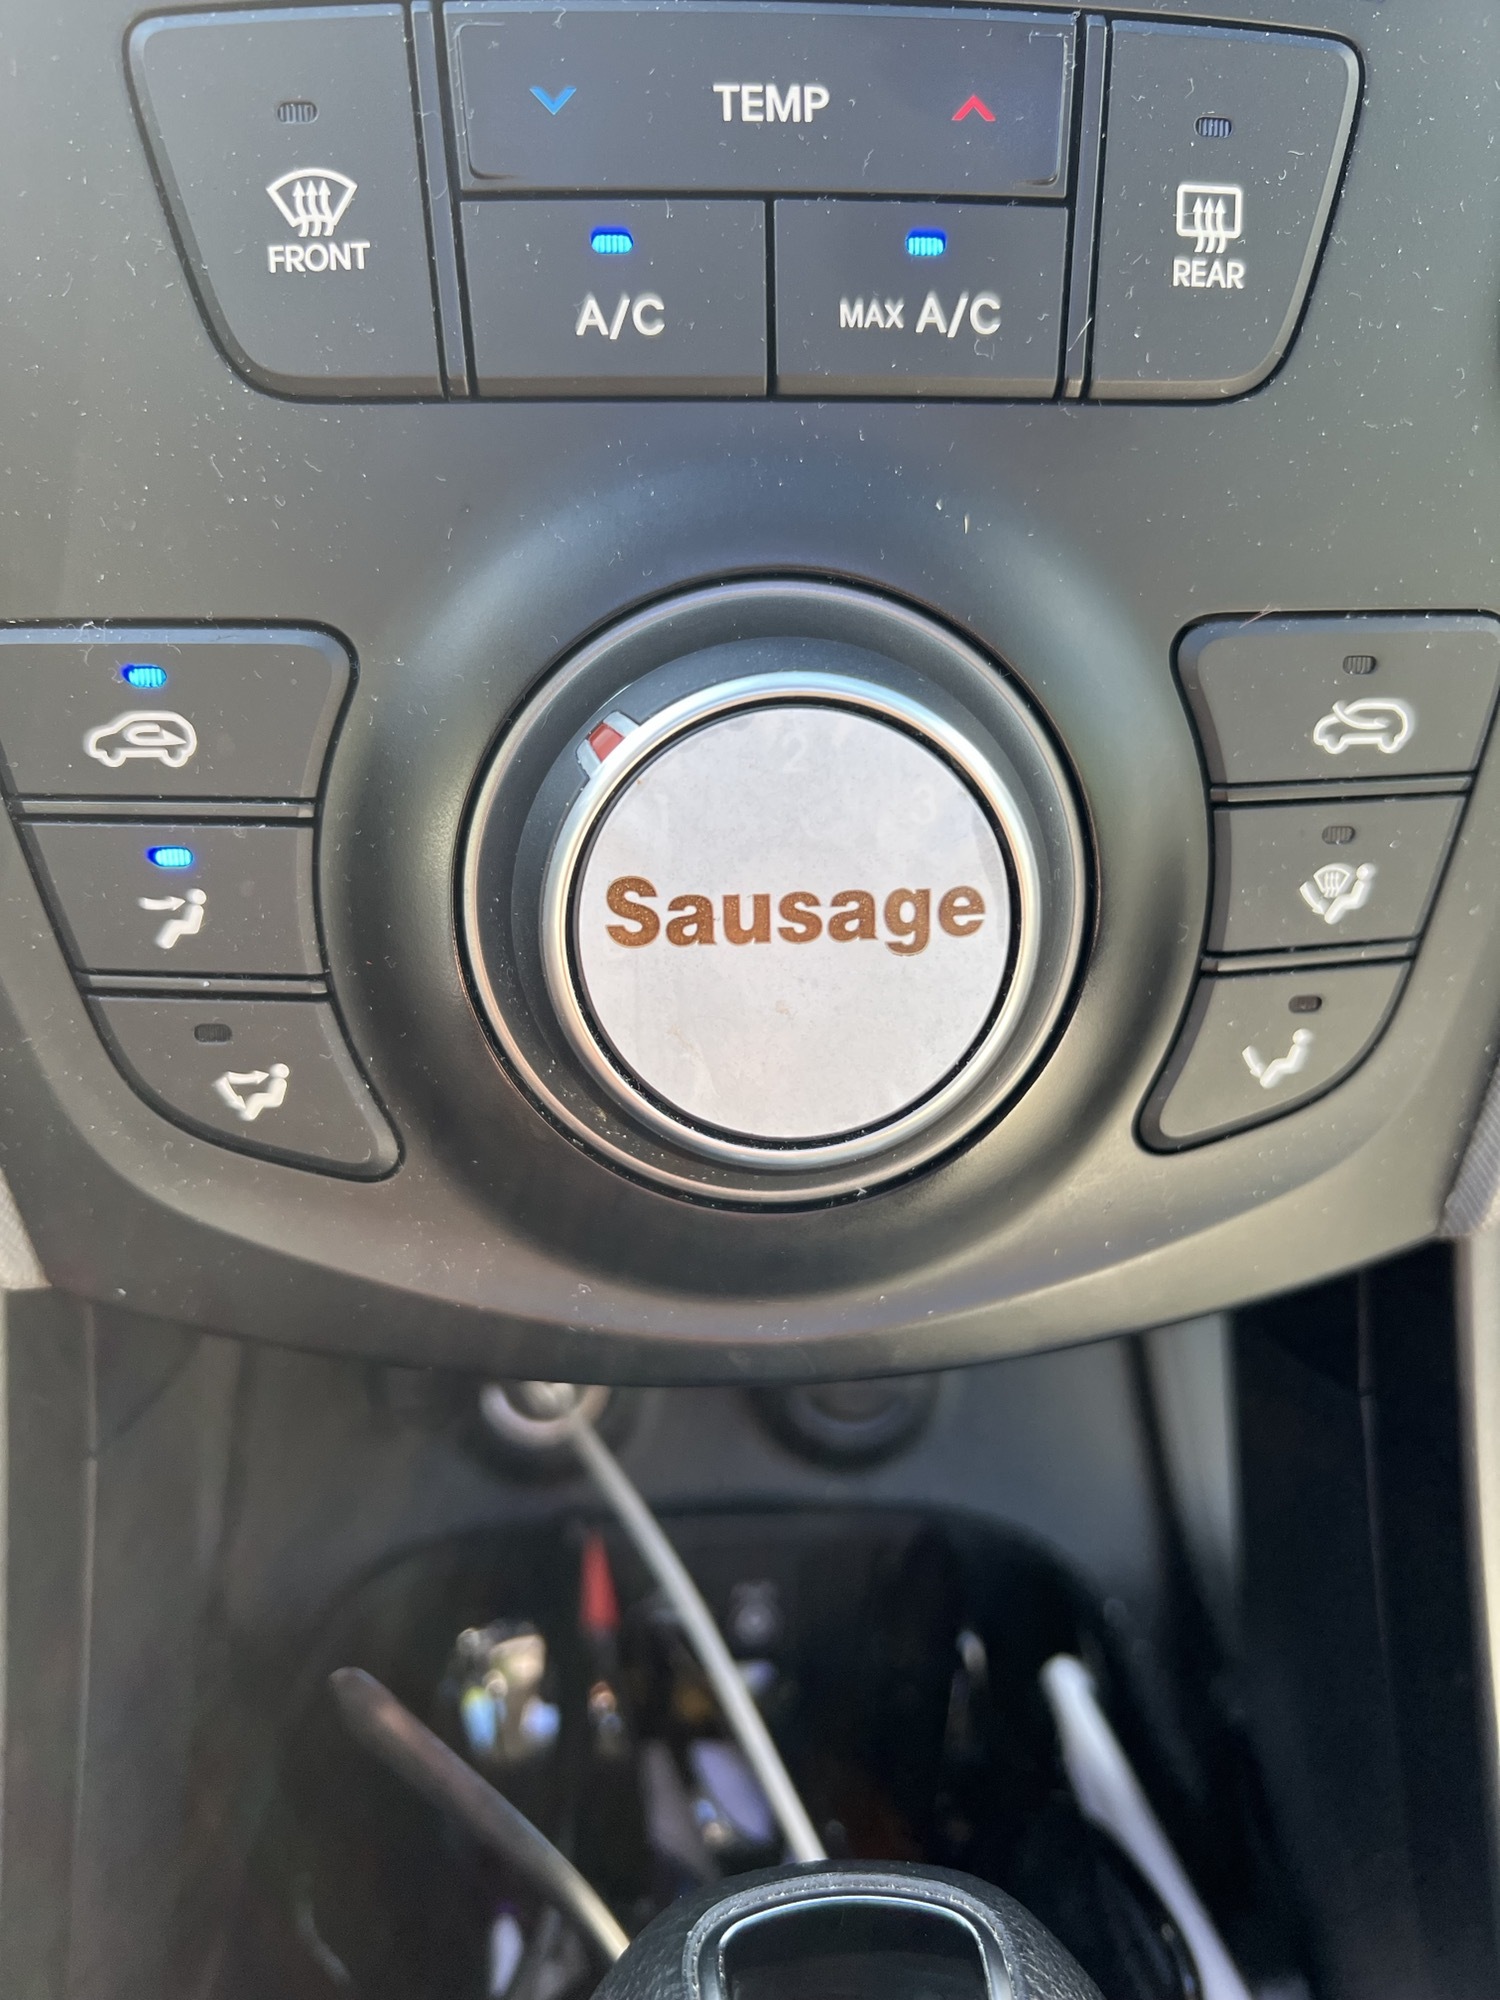 l’autocollant “saucisse” de mcdonald’s s’adapte parfaitement au bouton de ma climatisation